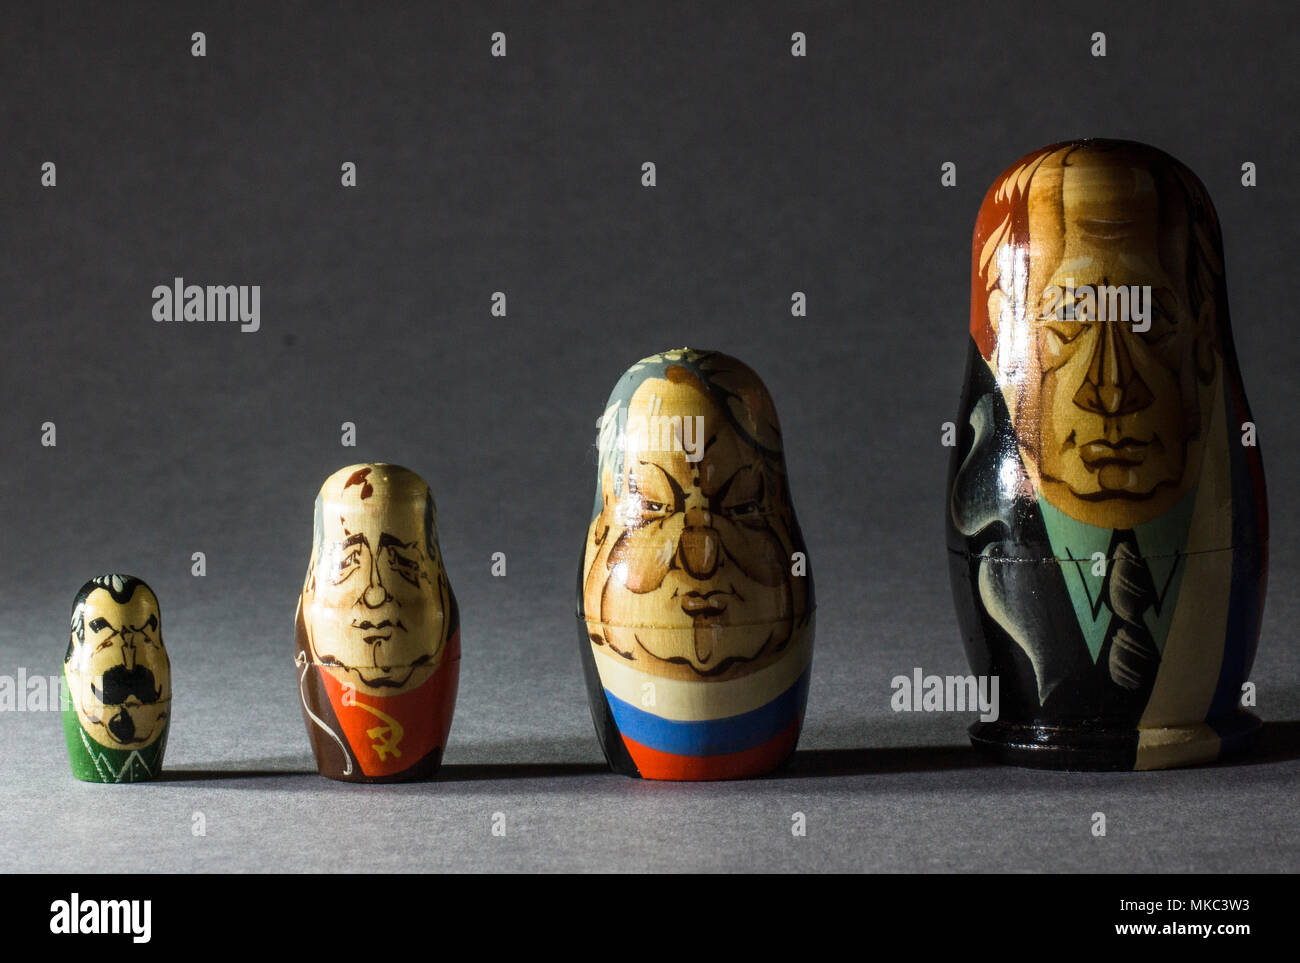 L'imbrication des poupées russes montrant d'anciens dirigeants, gorbachec,Staline,Eltsine et actuel chef Poutine Banque D'Images